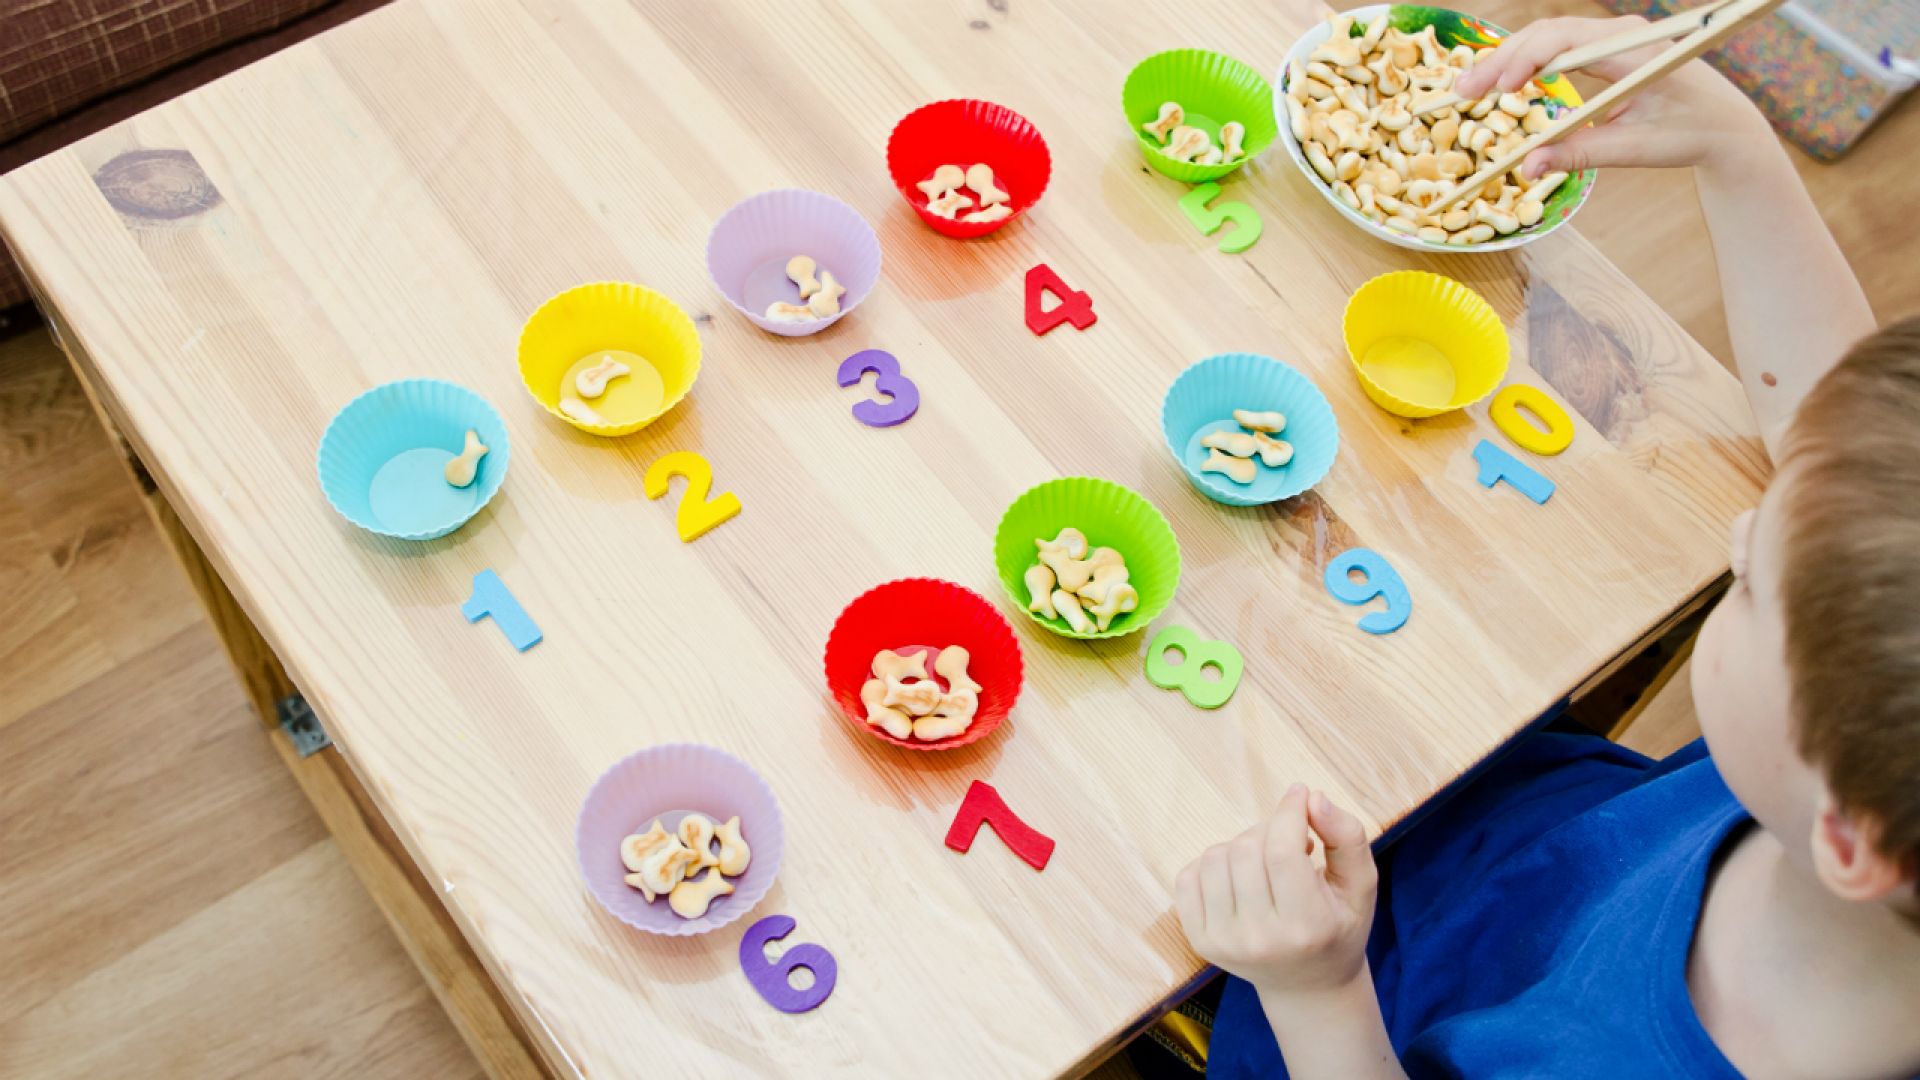 Веселые игры для мам. Развивашки для детей 2-3 года Монтессори. Igri Montessori для детей 3 года. Игры Монтессори для детей 3-4 лет. Игры по методике Монтессори для детей 2-3 лет.